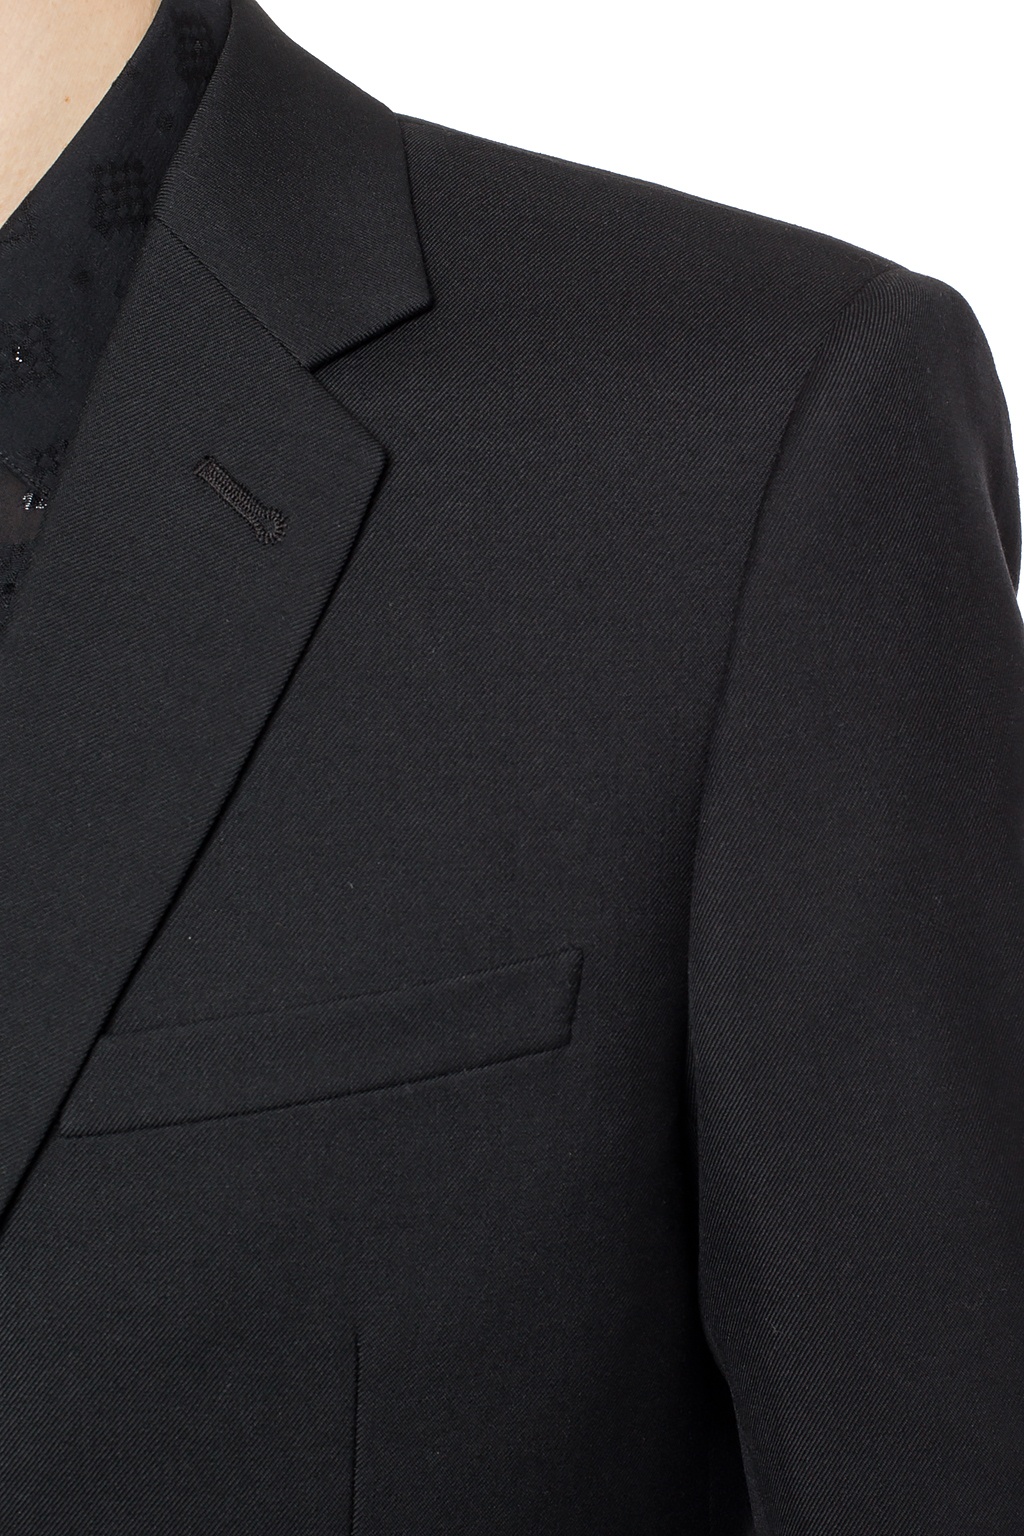 Saint Laurent Woolen blazer with pockets